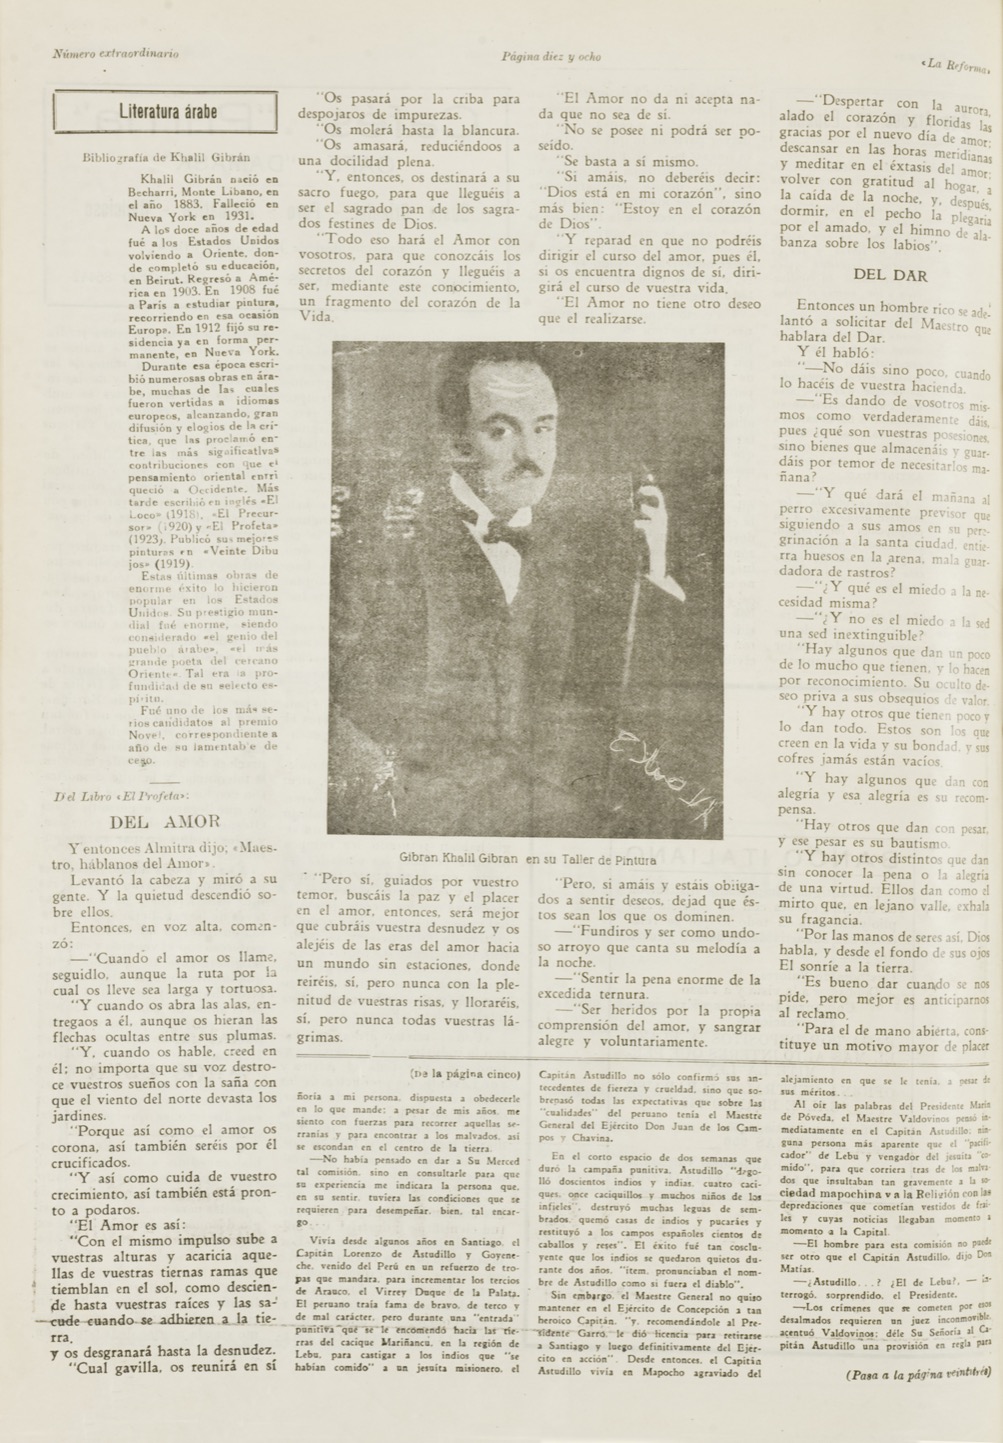 "Literatura árabe: Gibrán Khalil Gibrán", La Reforma, Sept 18, 1933 pp. 18-19,22.